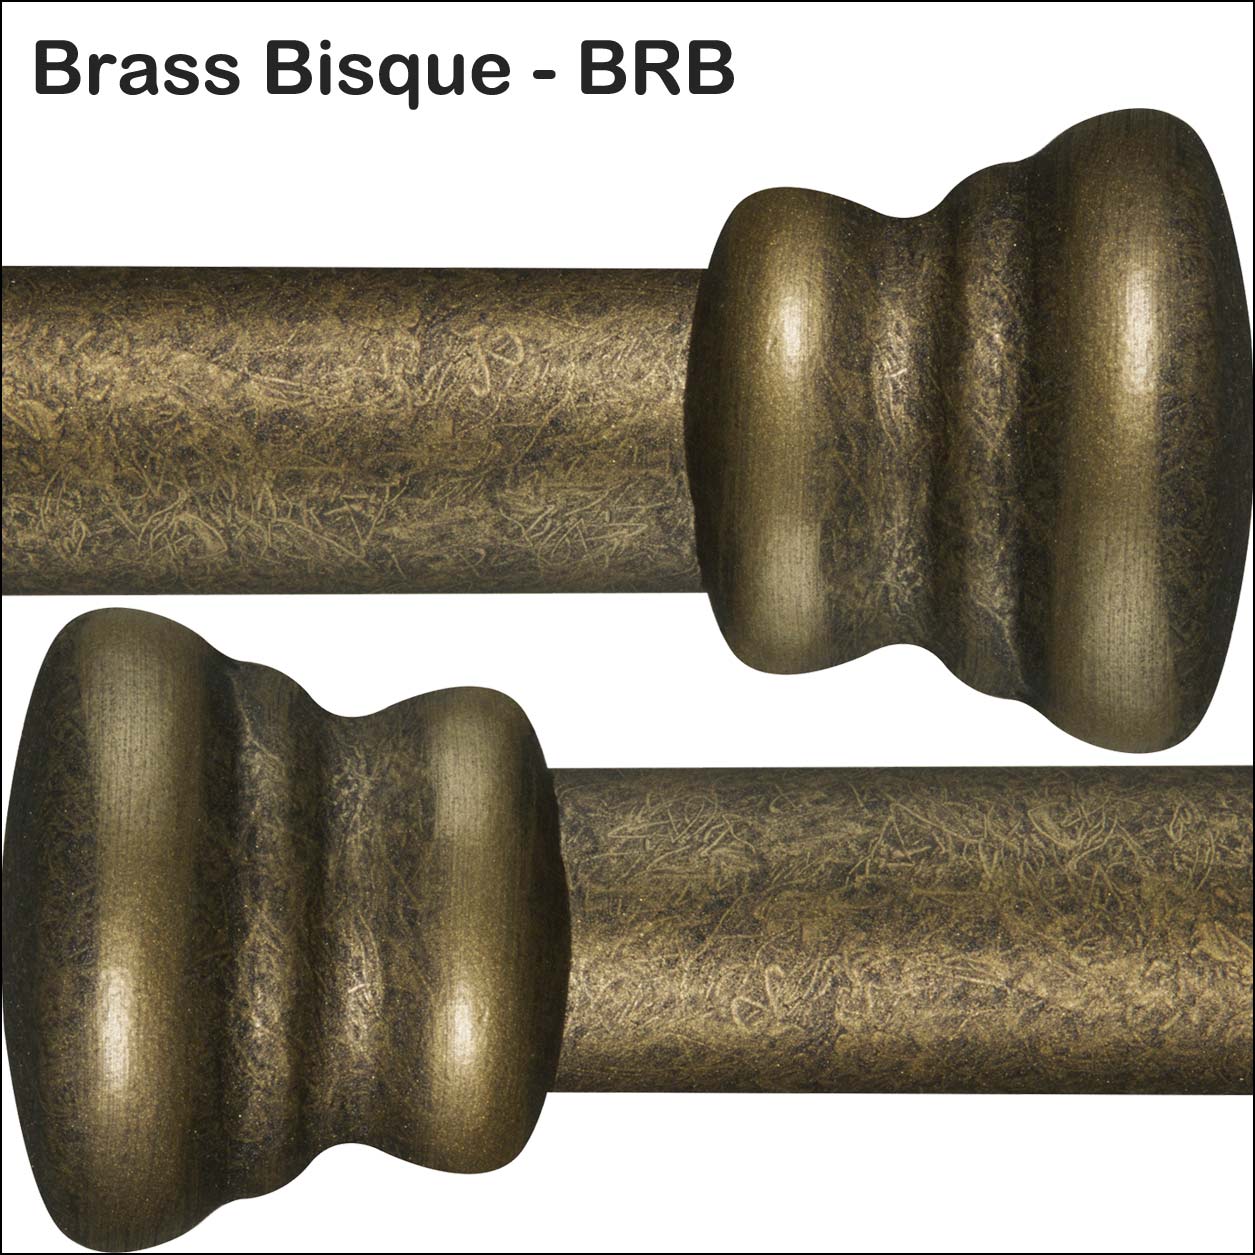 Brass Bisque BRB Powder Coating Finish Wesley Allen Matriae